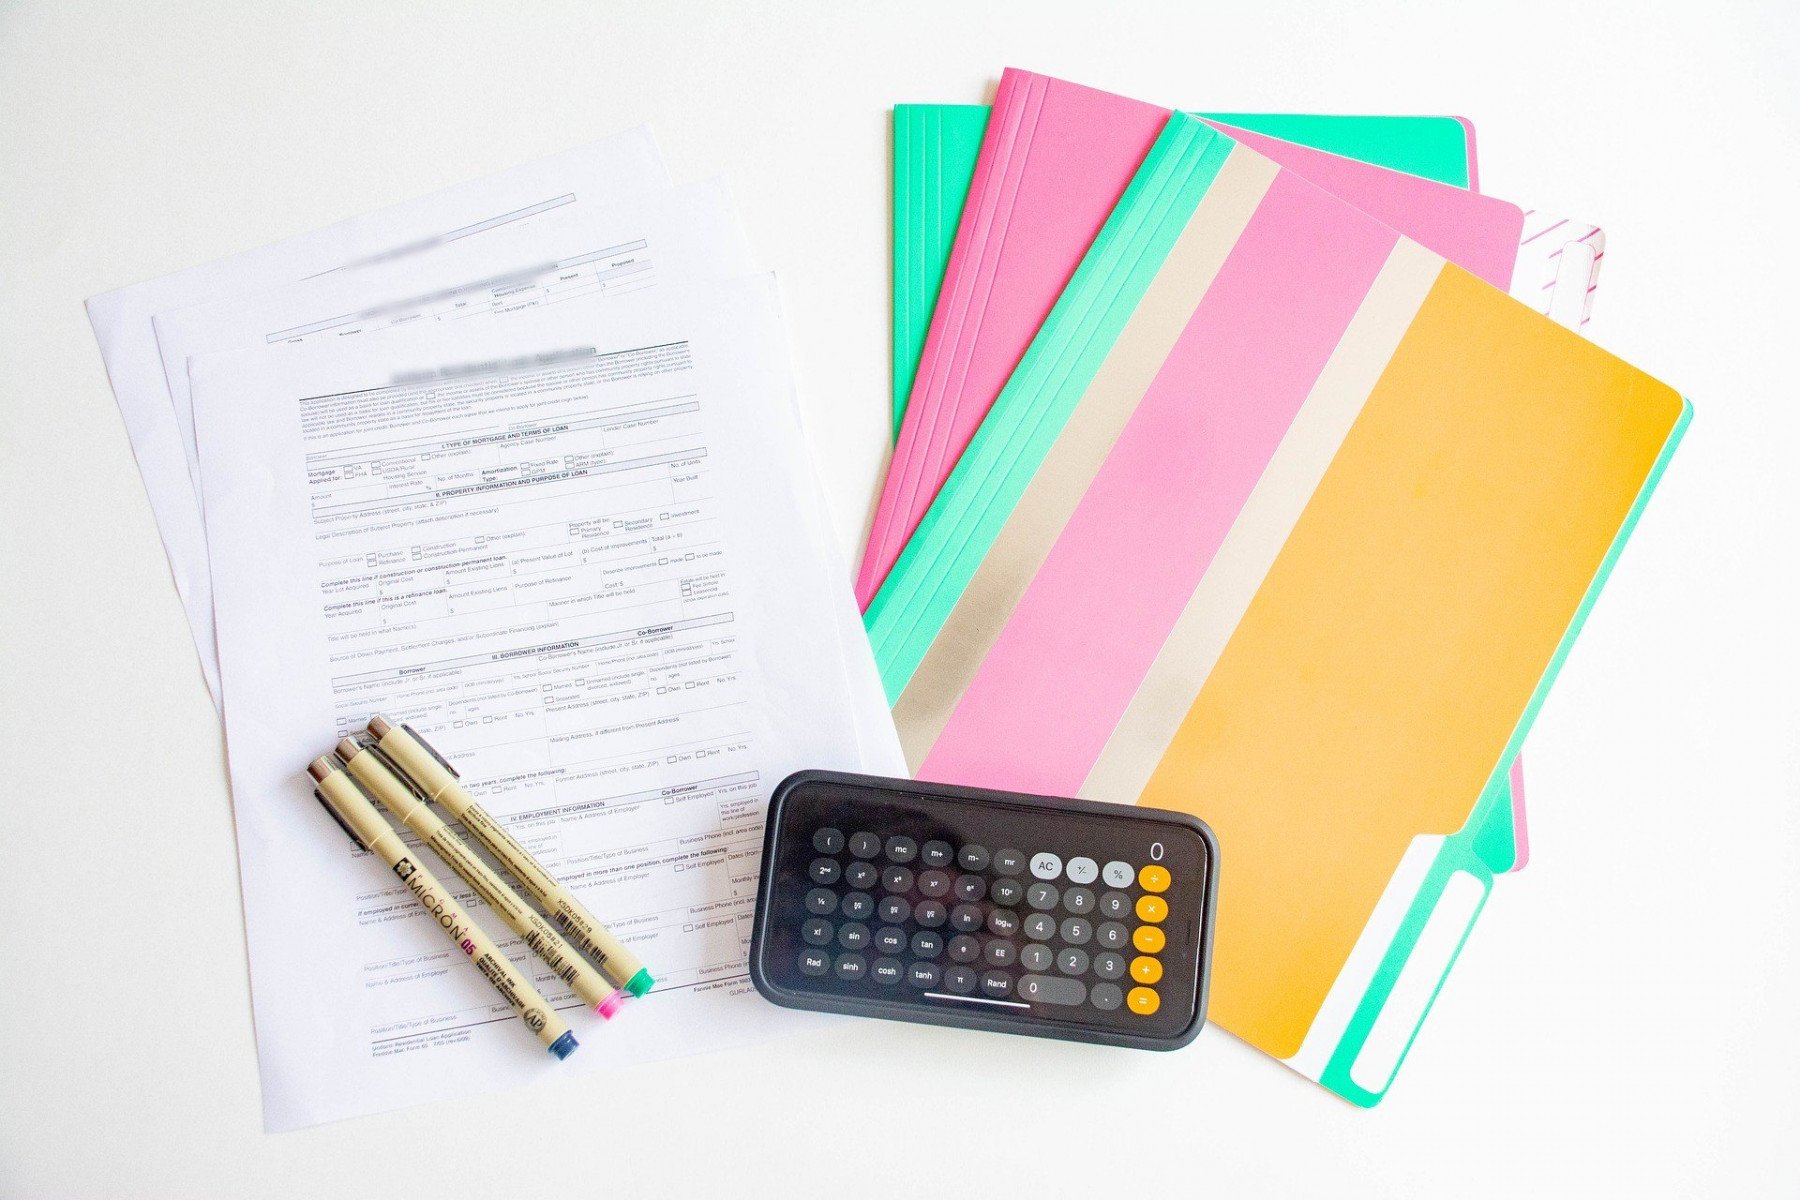 Avtal, pärmar och pennor ligger på ett bord med en mobil